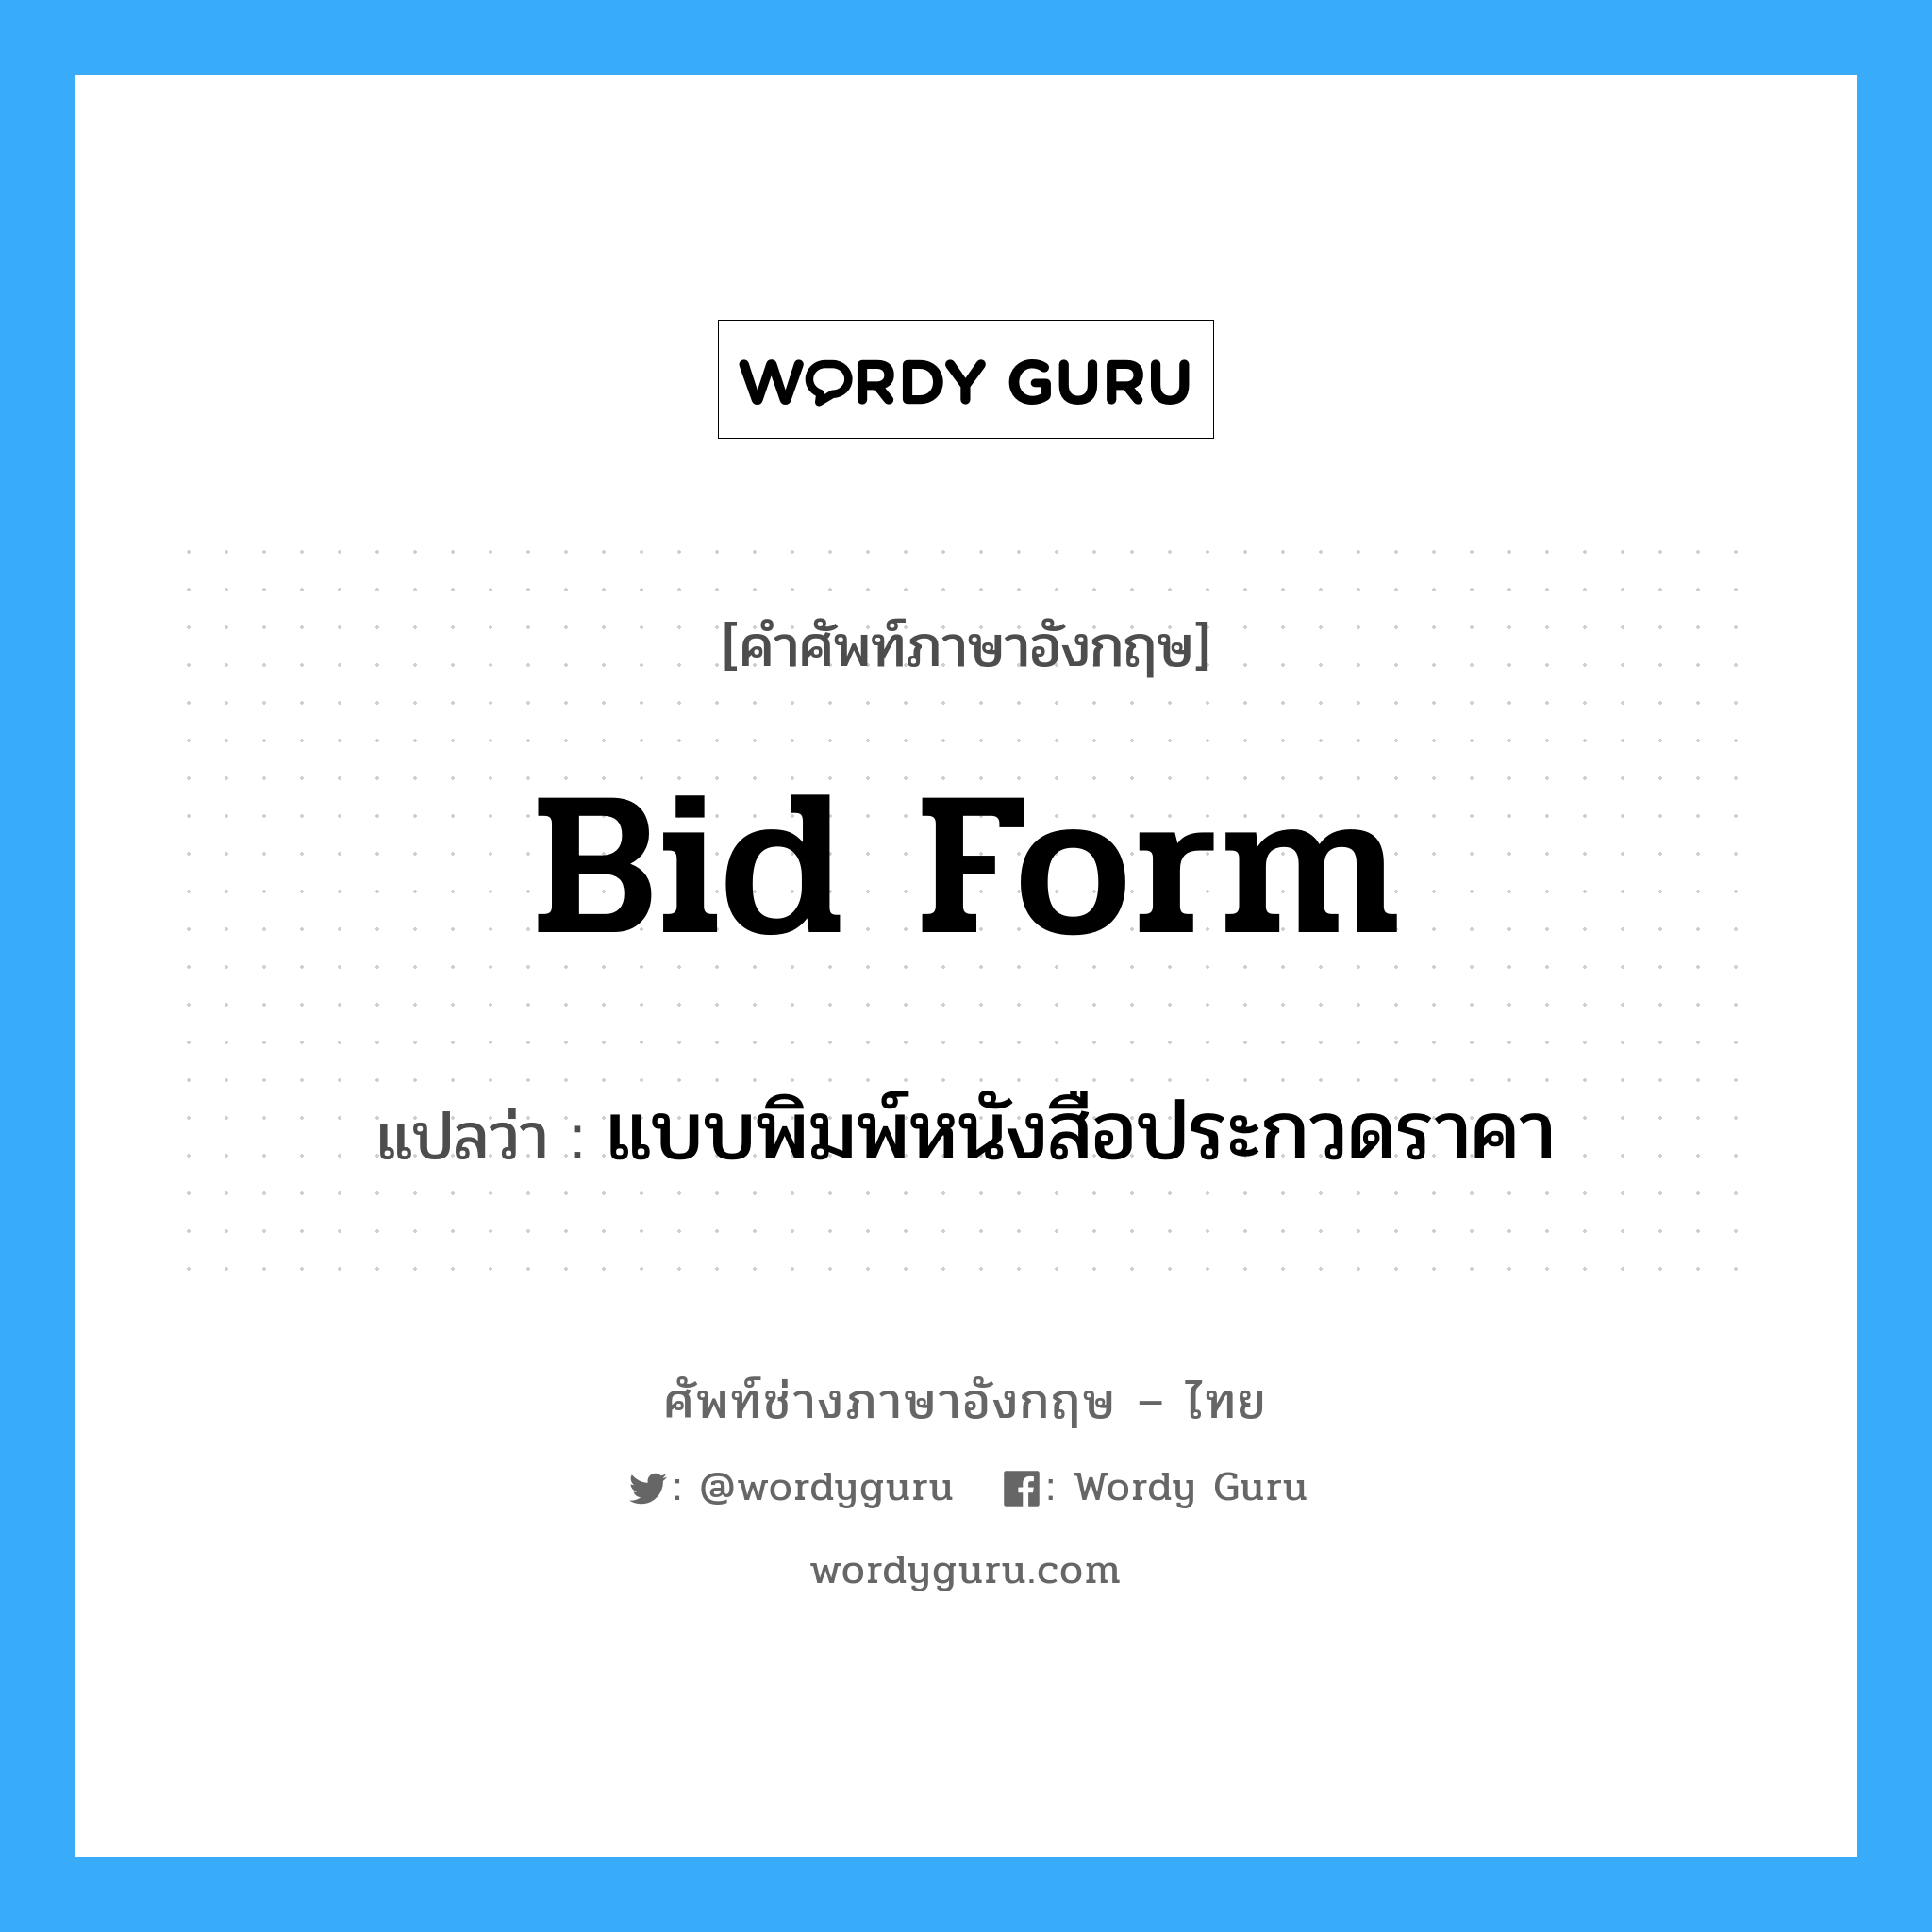 Bid Form แปลว่า?, คำศัพท์ช่างภาษาอังกฤษ - ไทย Bid Form คำศัพท์ภาษาอังกฤษ Bid Form แปลว่า แบบพิมพ์หนังสือประกวดราคา